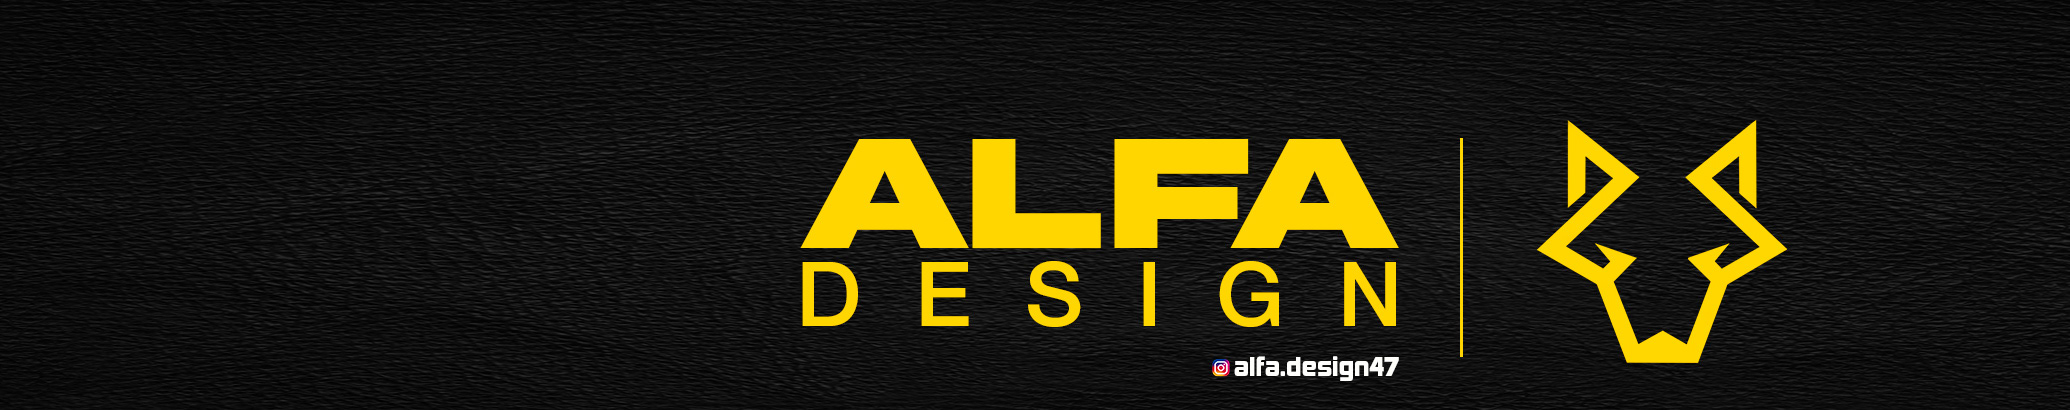 Alfa Design's profile banner